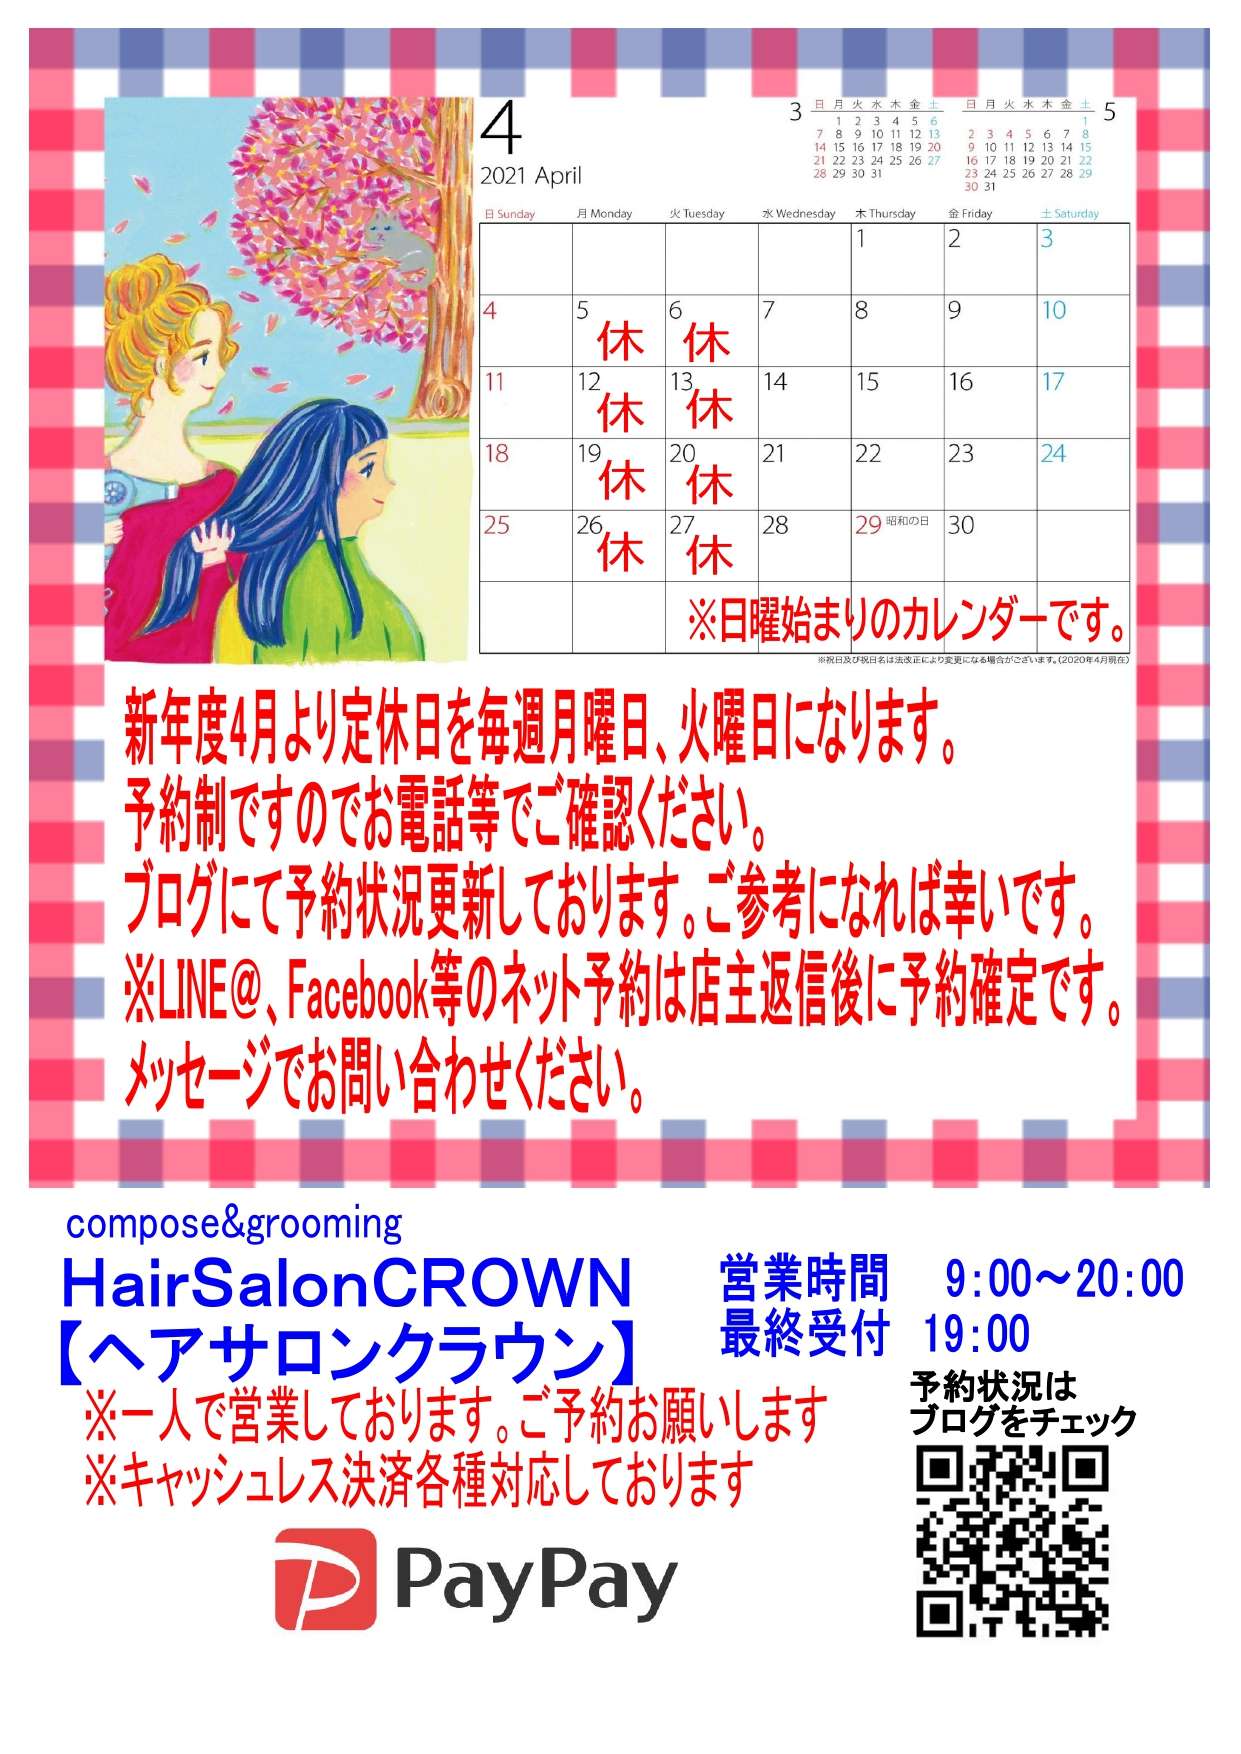 【神戸舞子駅前の理容室HairSalonCROWN】定休日のお知らせについて